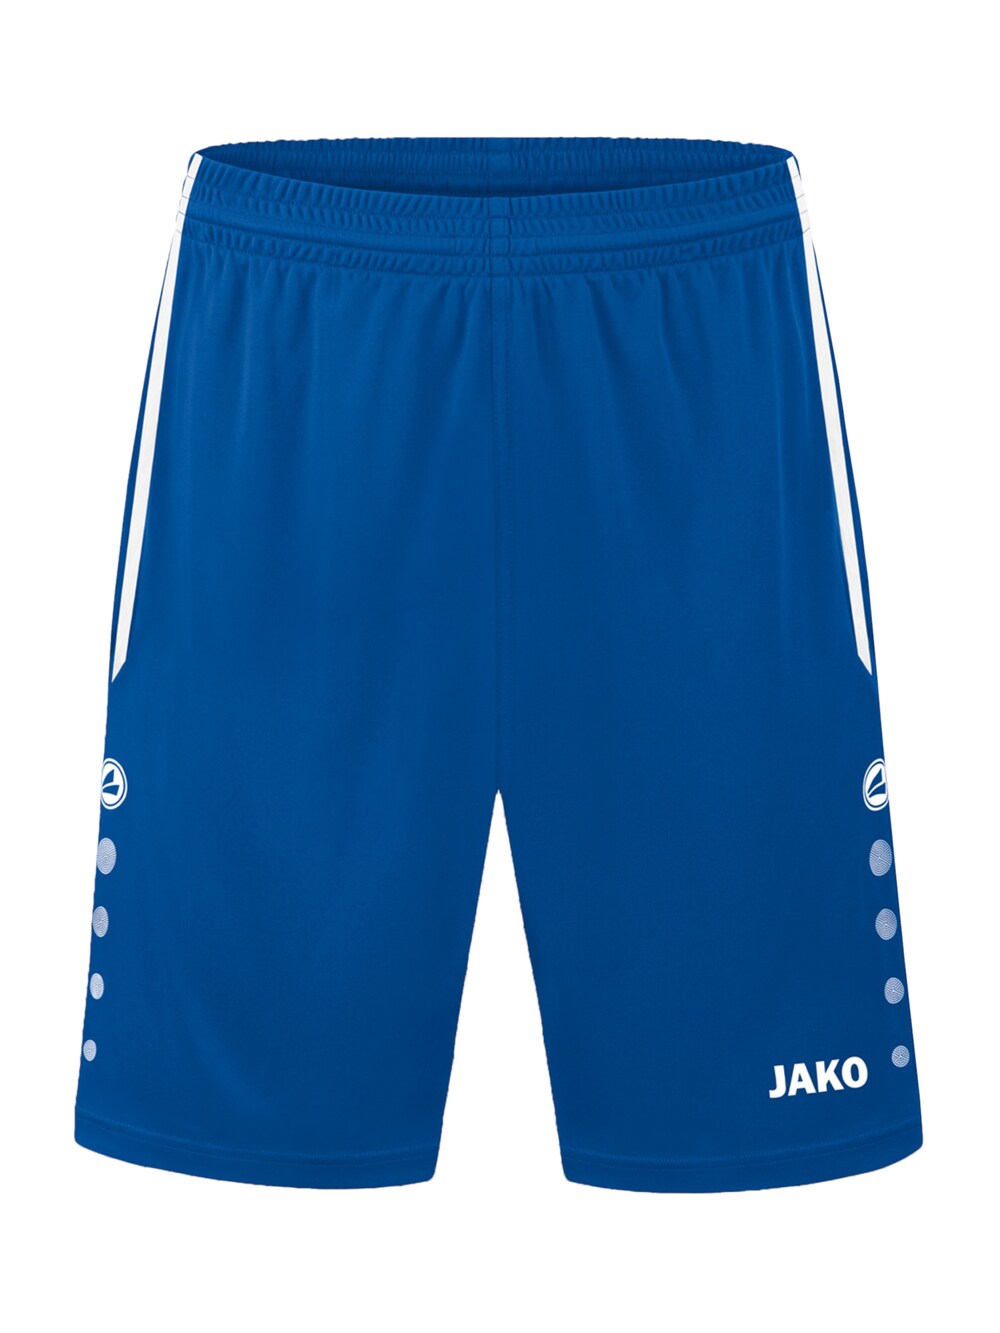 Обычные тренировочные брюки Jako, синий обычные тренировочные брюки jako ночной синий